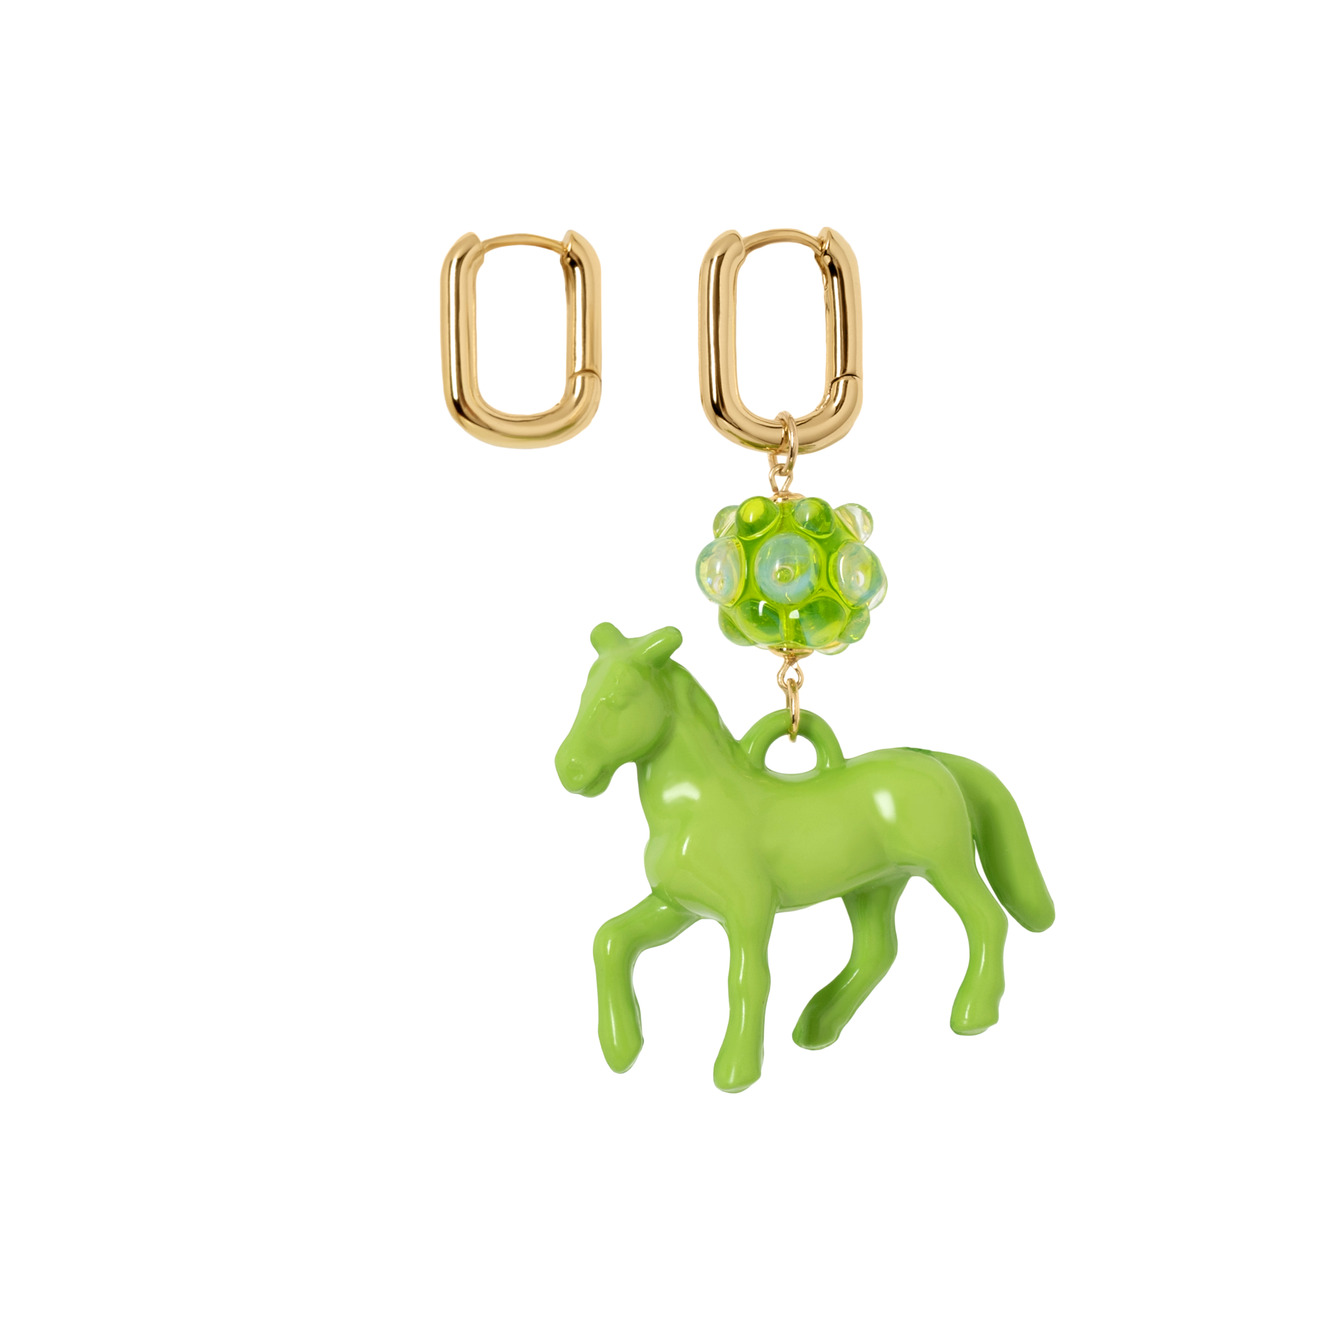 Kotlo Studio Золотистые серьги с зеленой лошадкой и бусиной Мурано